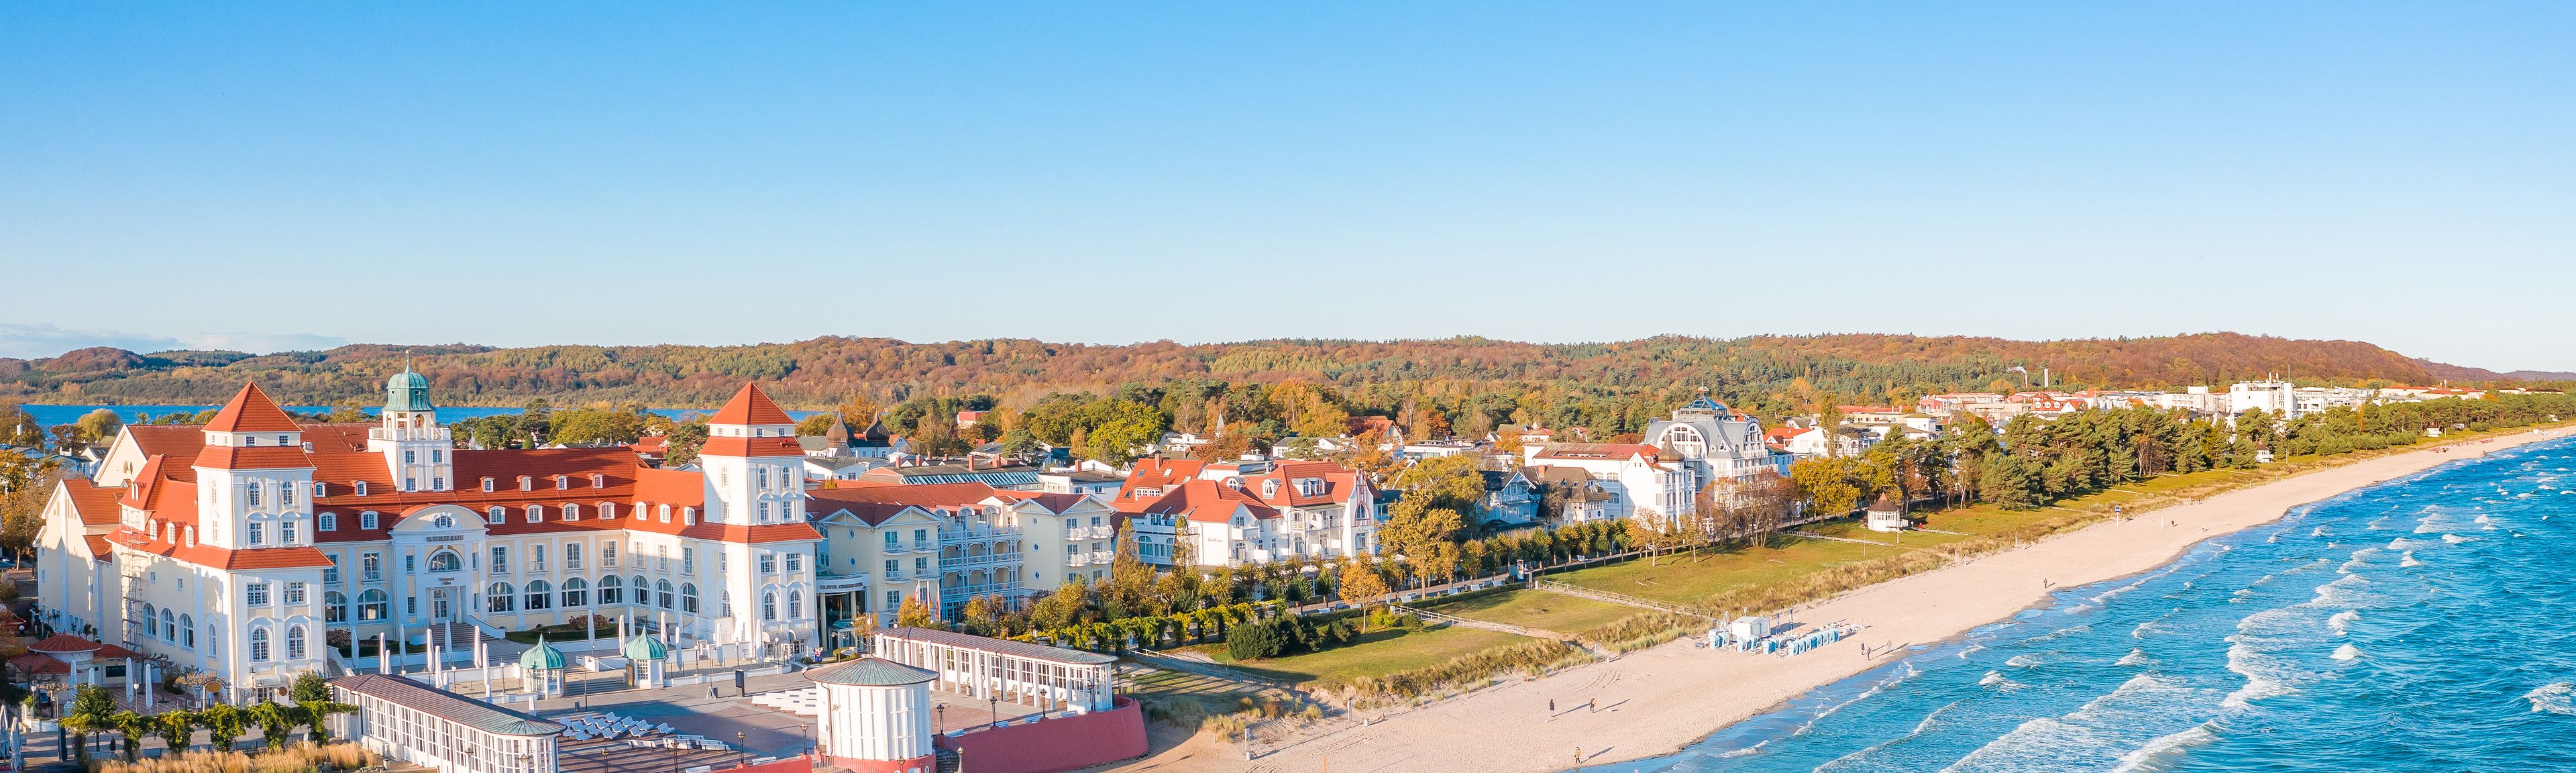 Ostsee-Strand mit Kurhotel in Deutschland